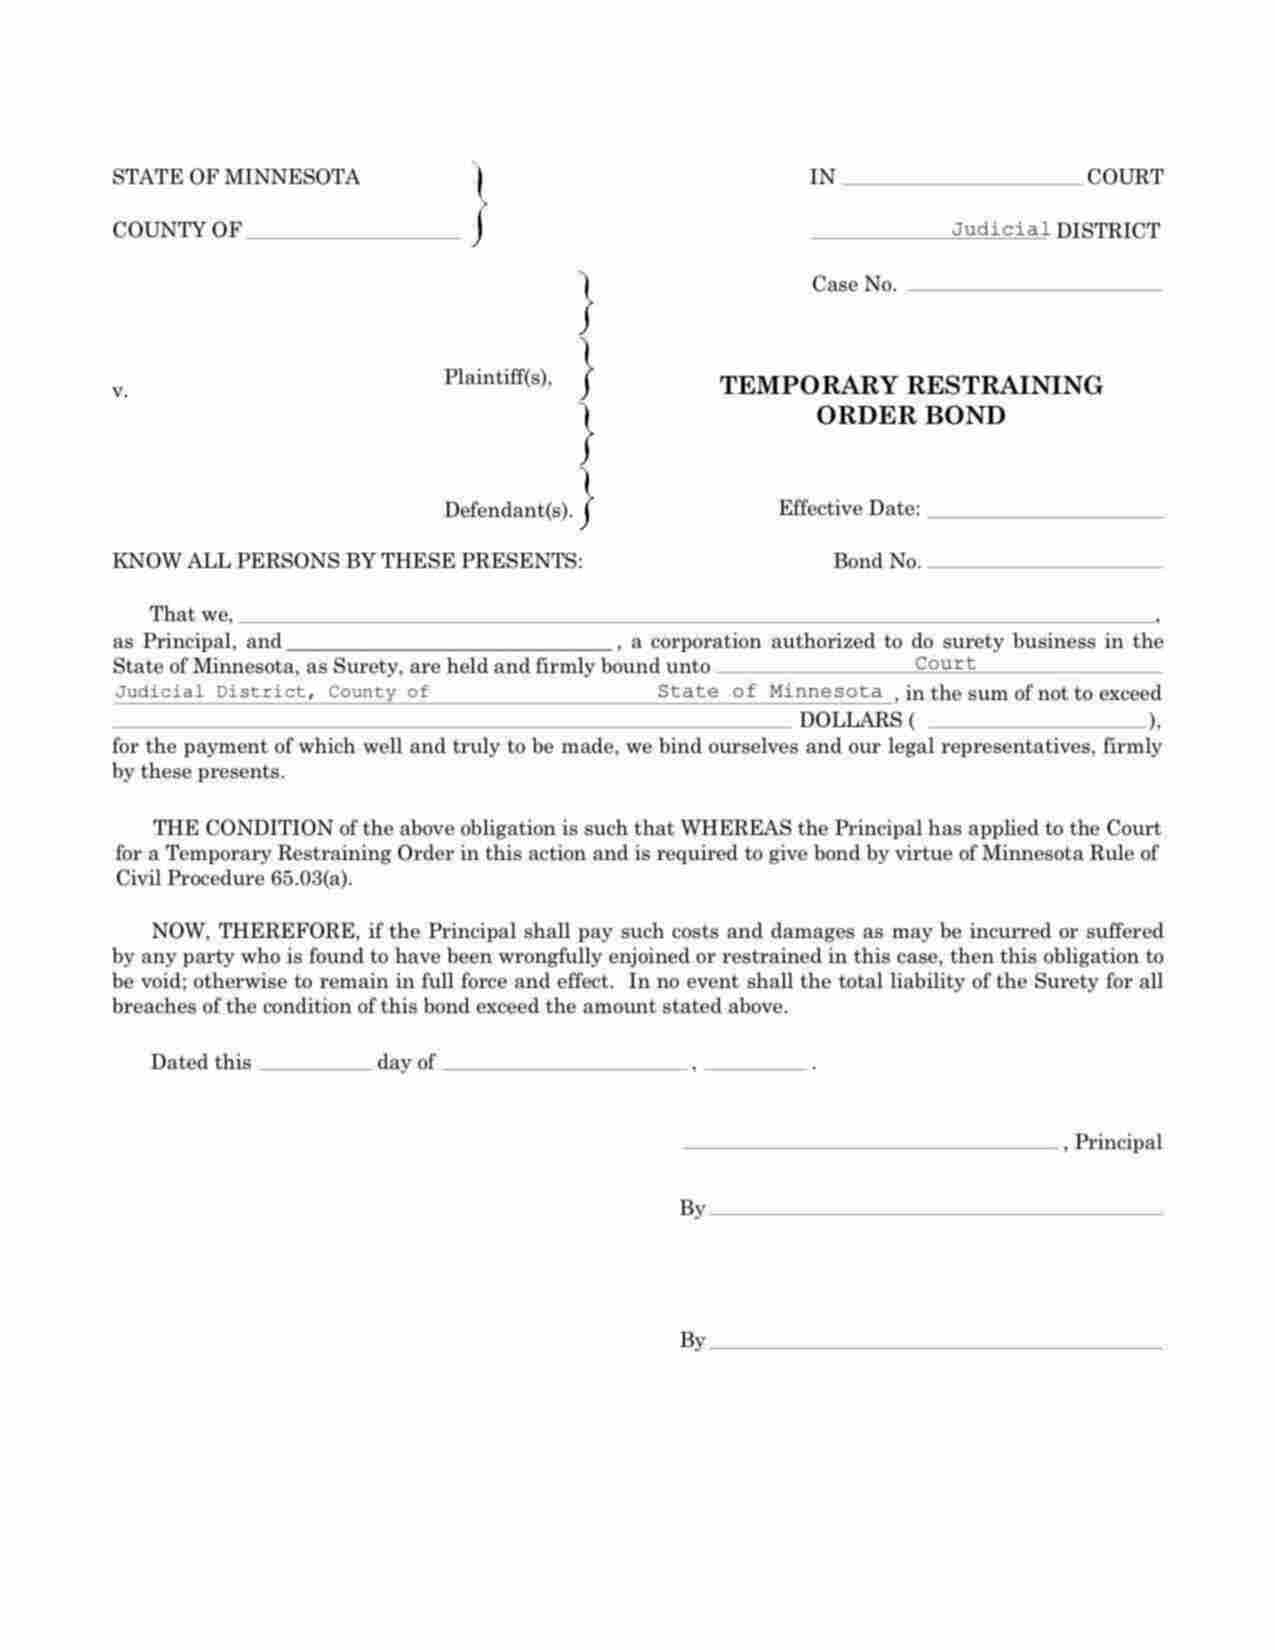 Minnesota Temporary Restraining Order Bond Form